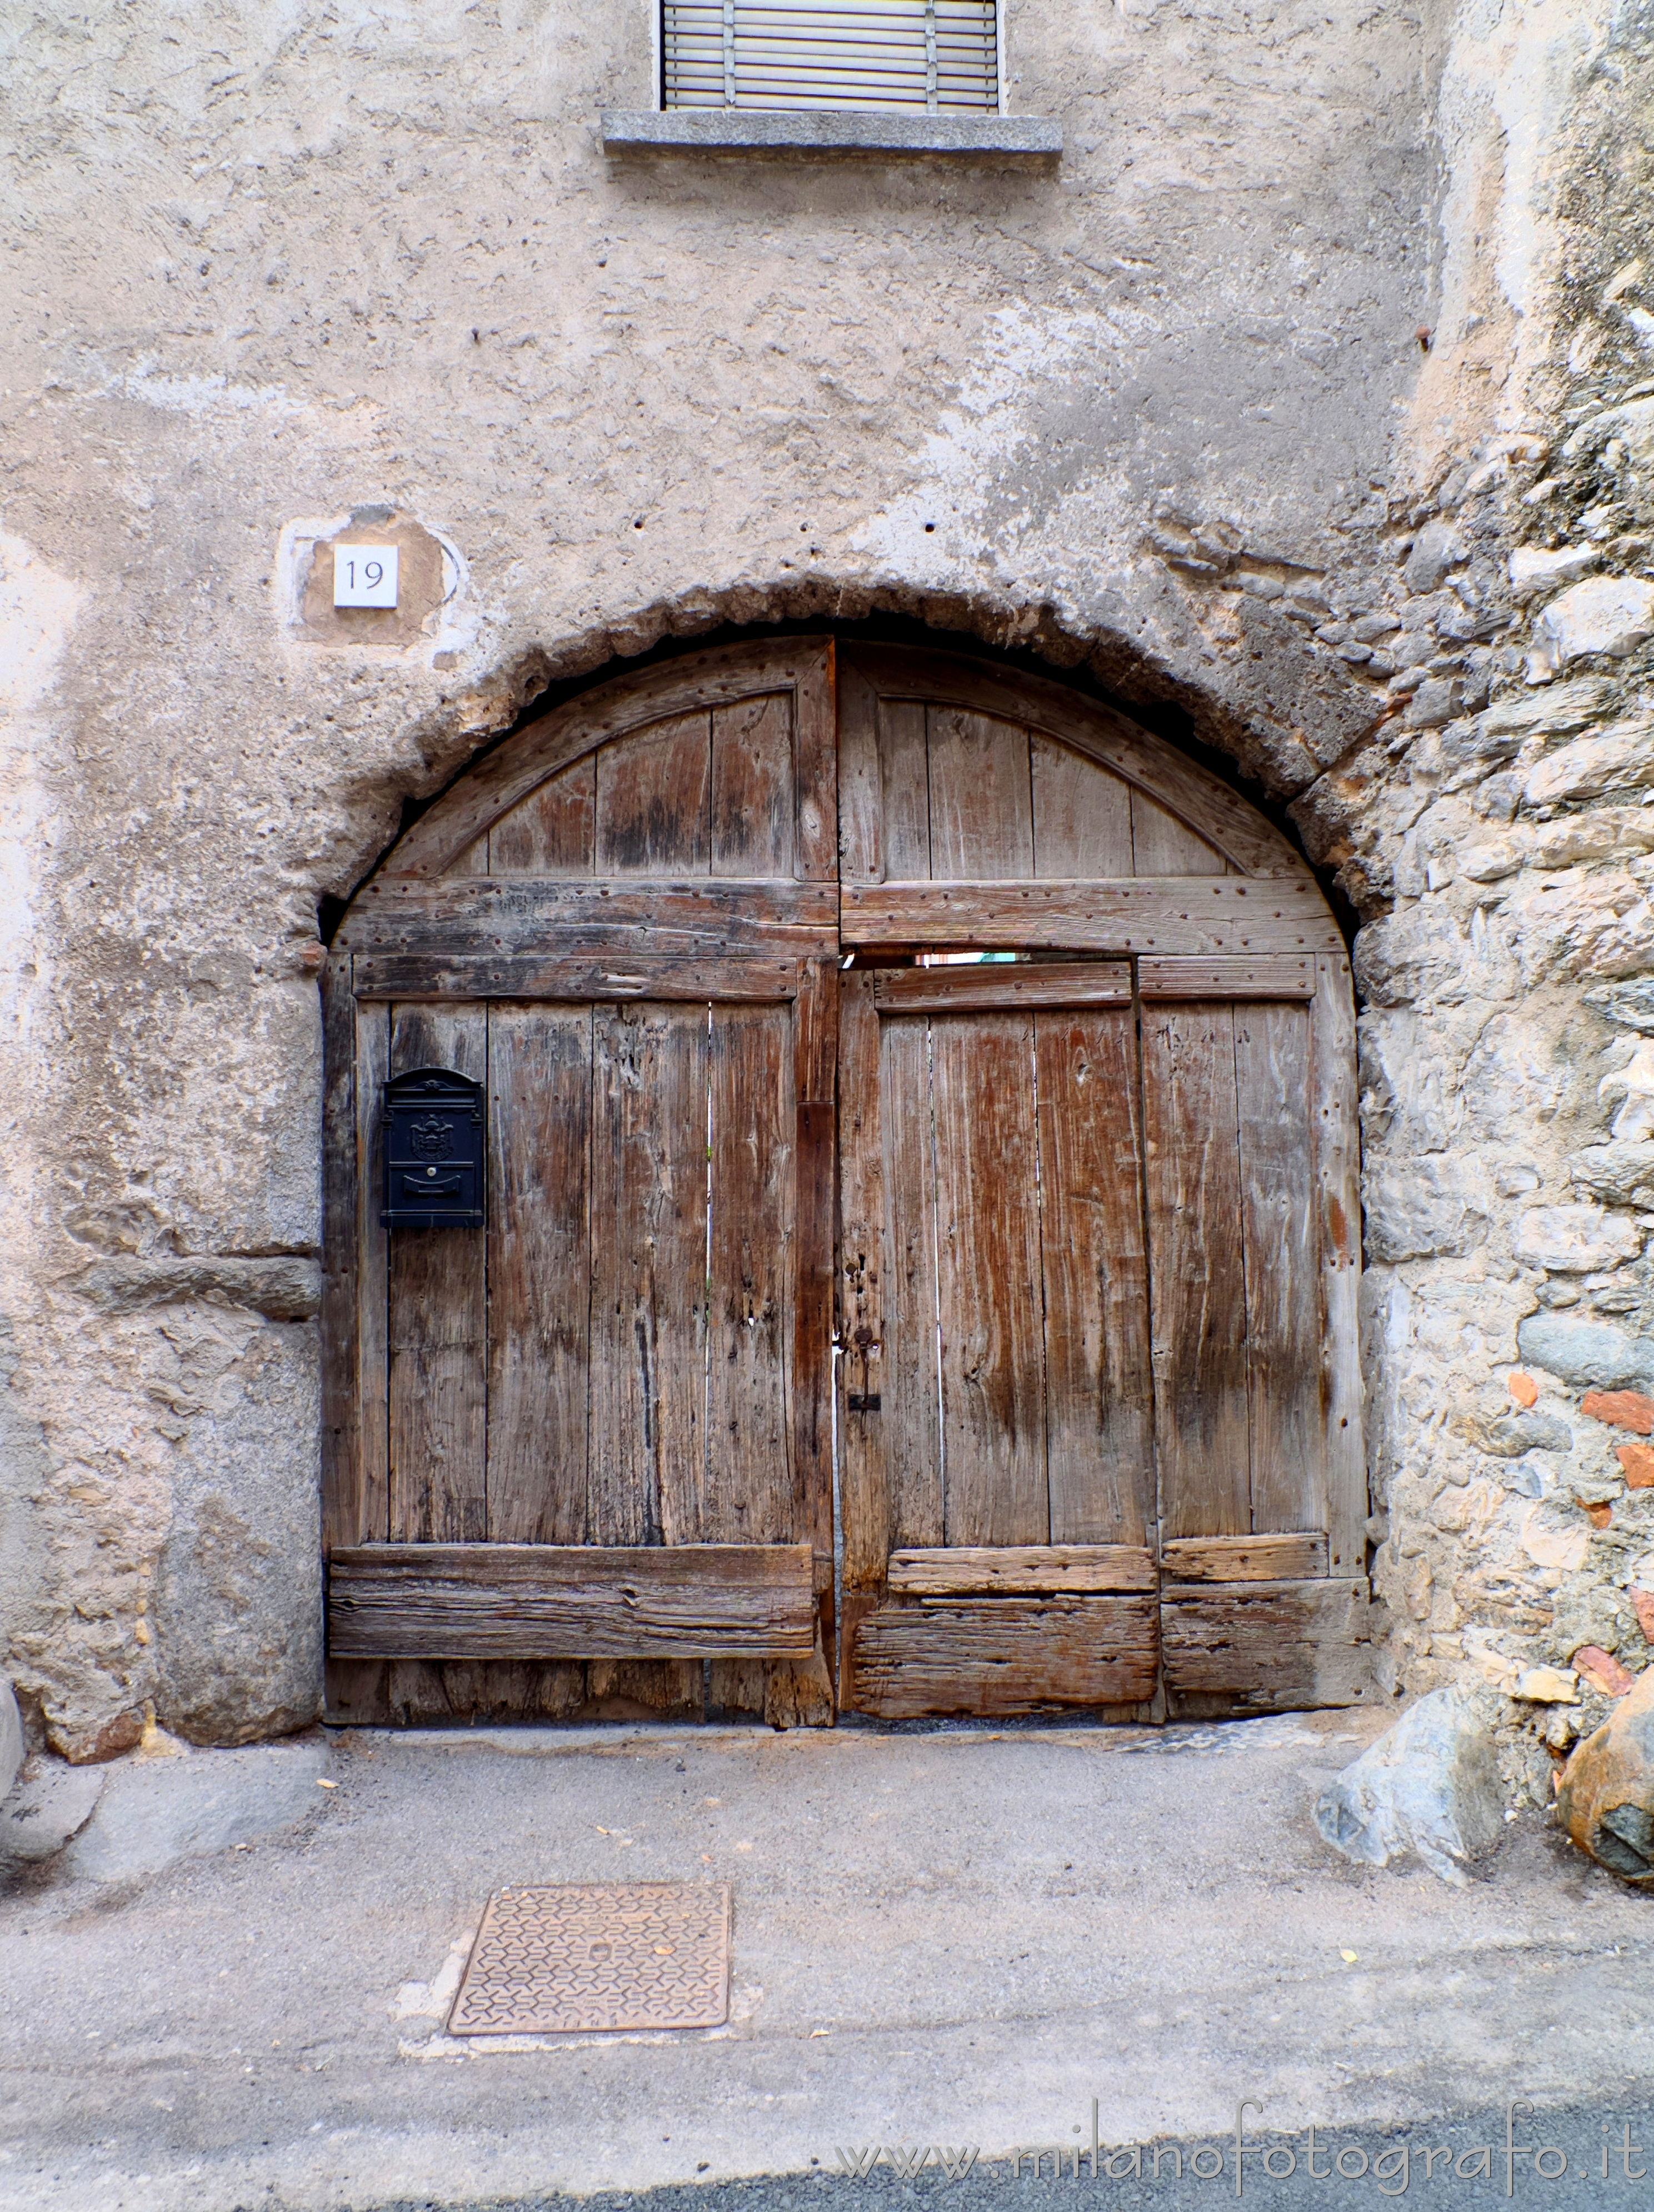 Canzo (Como, Italy): Old courtyard door - Canzo (Como, Italy)